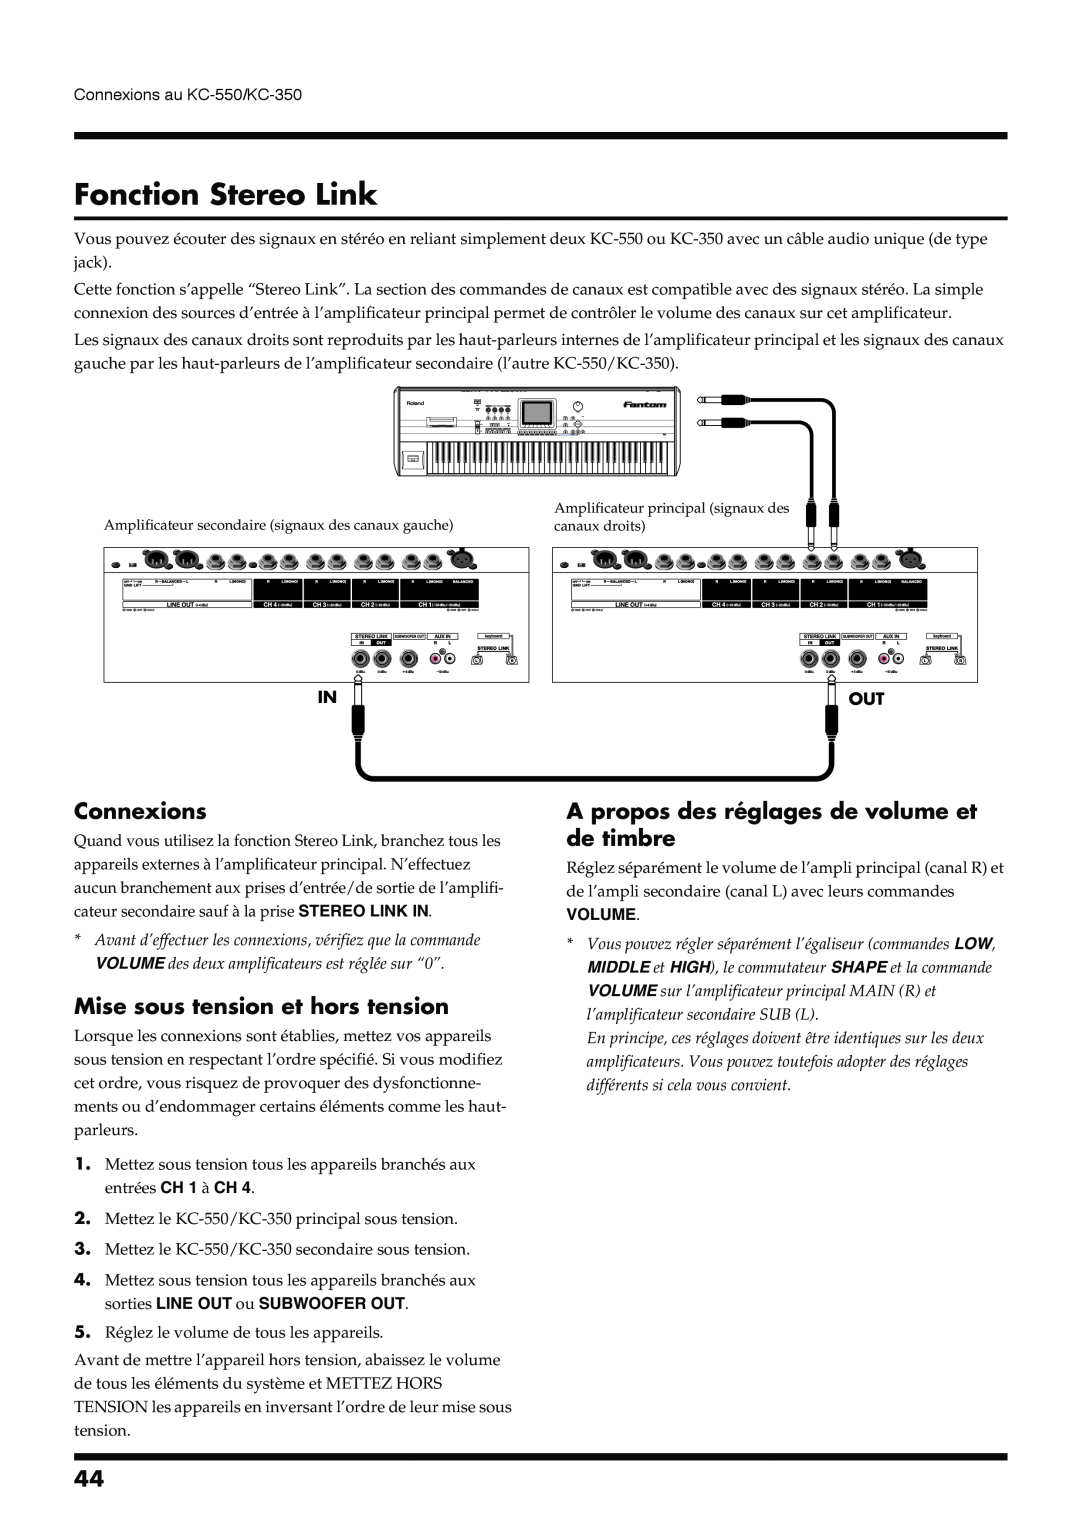 Roland KC-350, KC-550 manual Fonction Stereo Link, Connexions, Mise sous tension et hors tension, Volume 